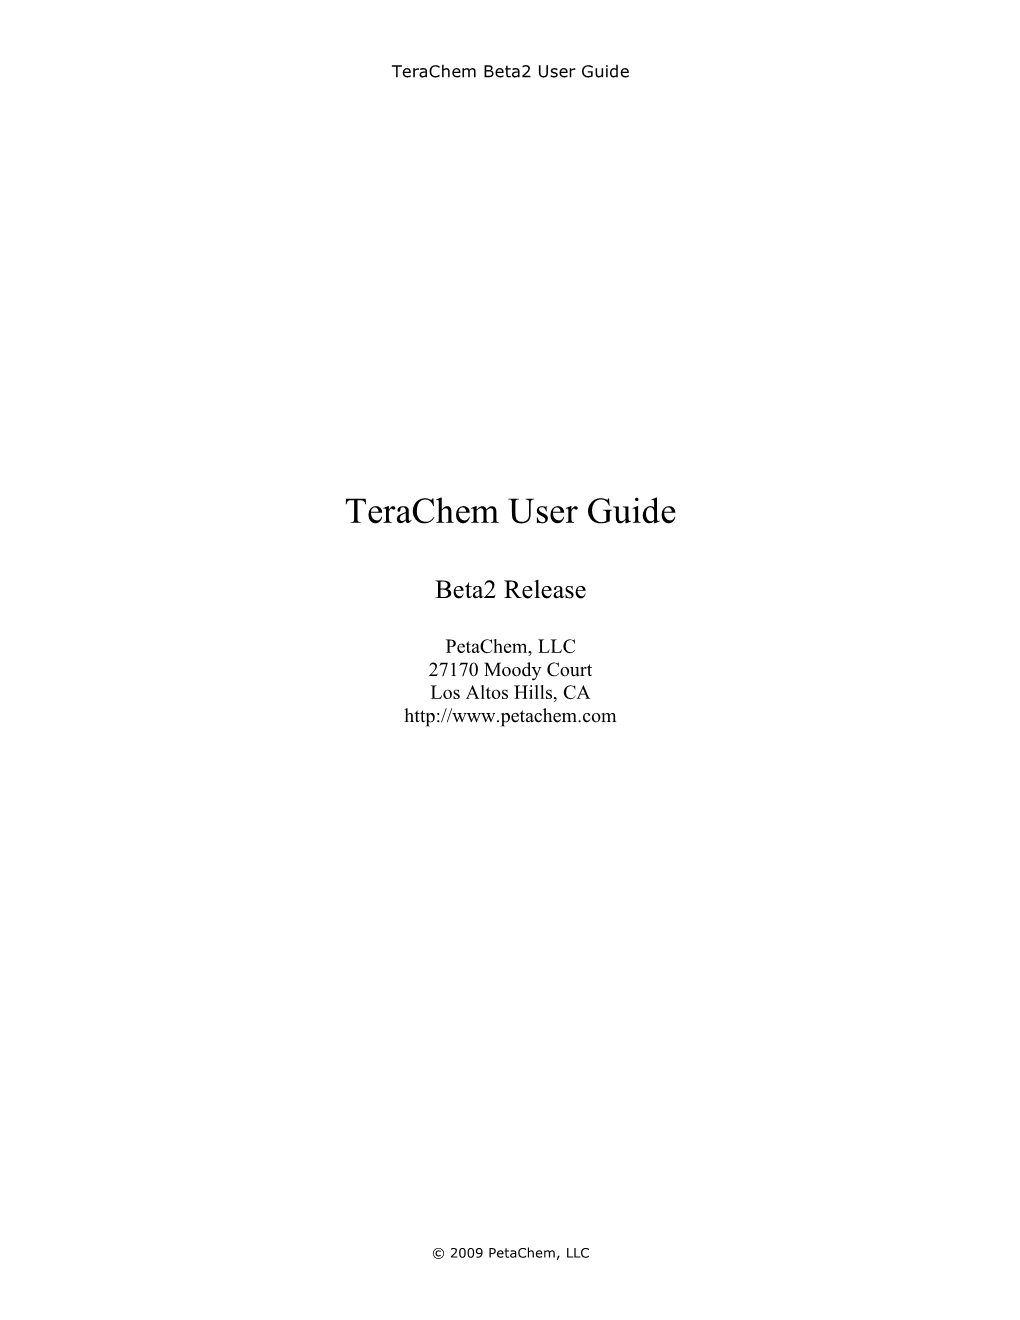 Terachem User Guide